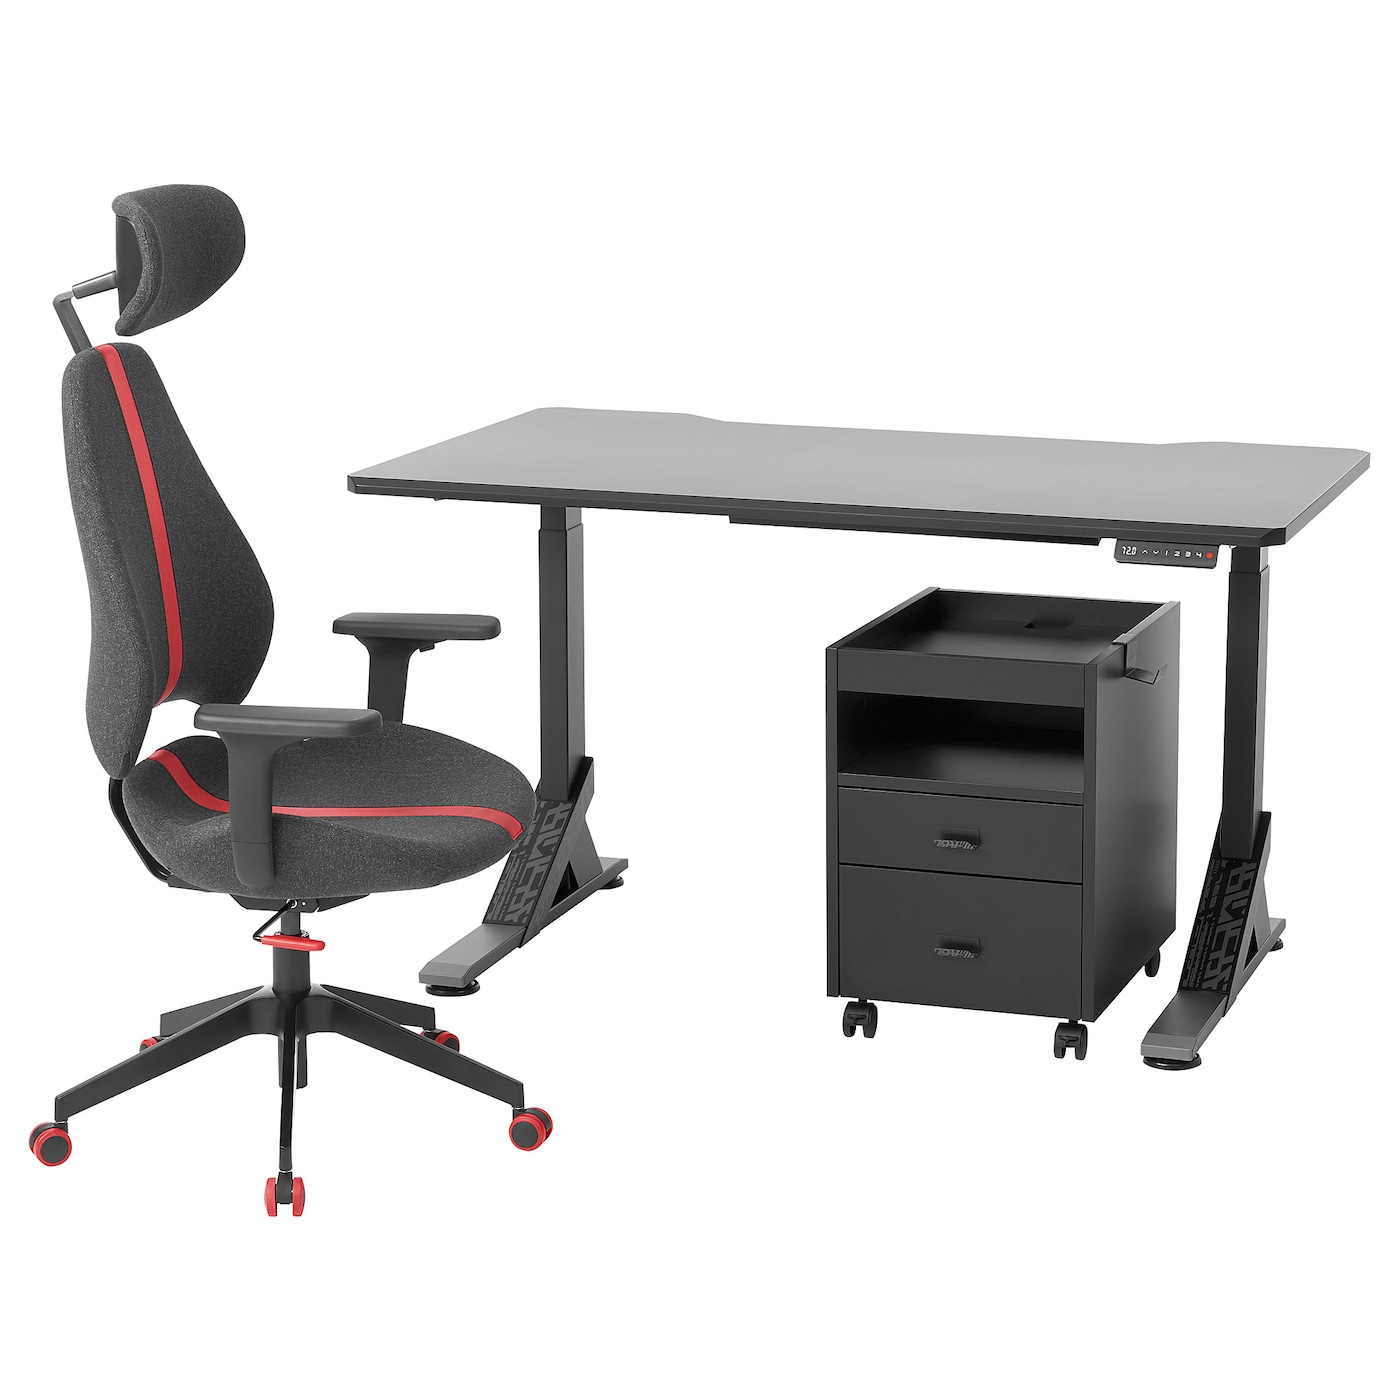 Игровой стол и стул с выдвижным ящиком - IKEA UPPSPEL/GRUPPSPEL, 140х80х140-180 см, черный/красный, УППСПЕЛ/ГРУППСПЕЛ ИКЕА